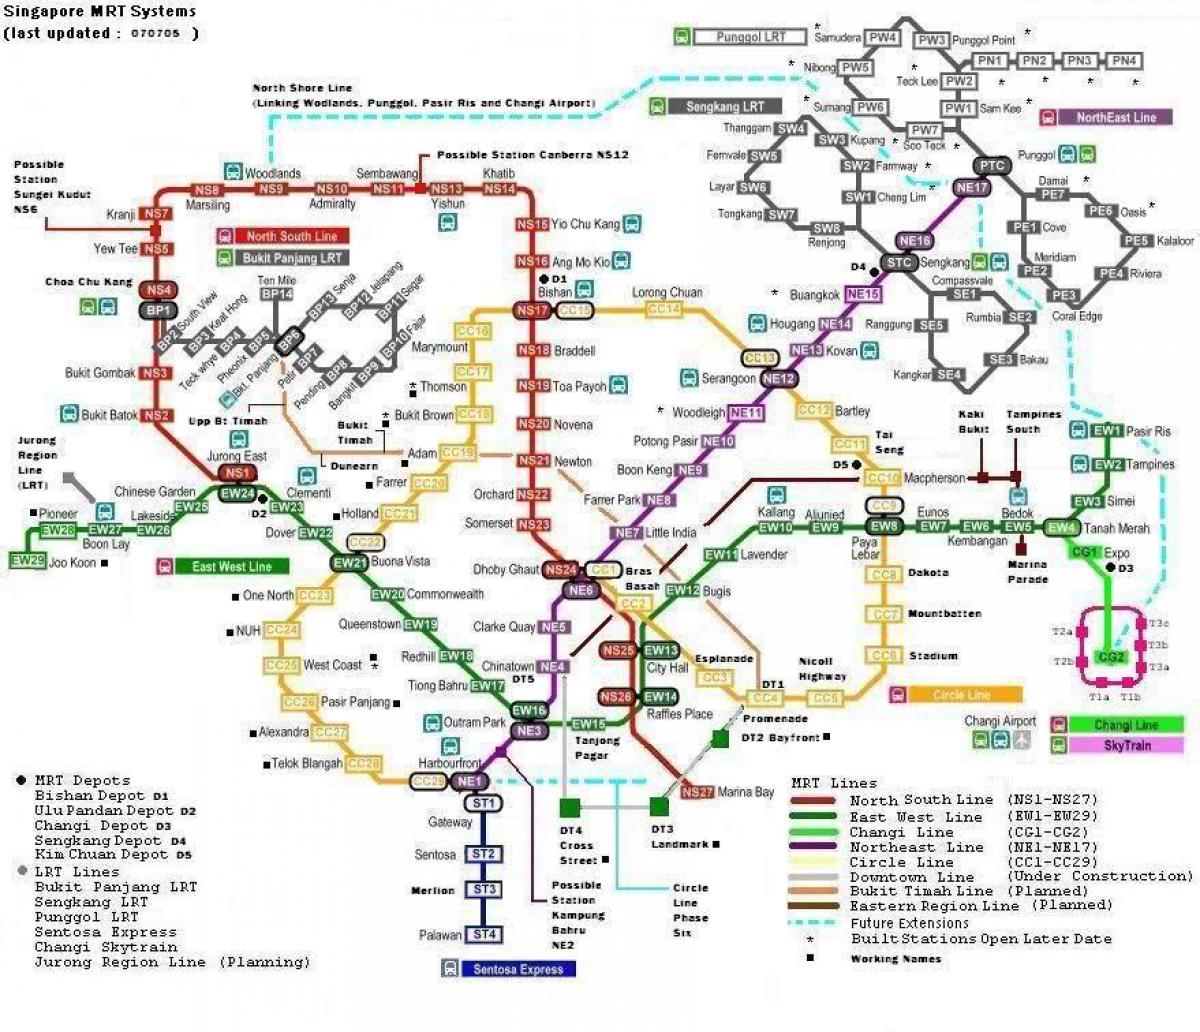 mrt 7 سٹیشنوں کا نقشہ